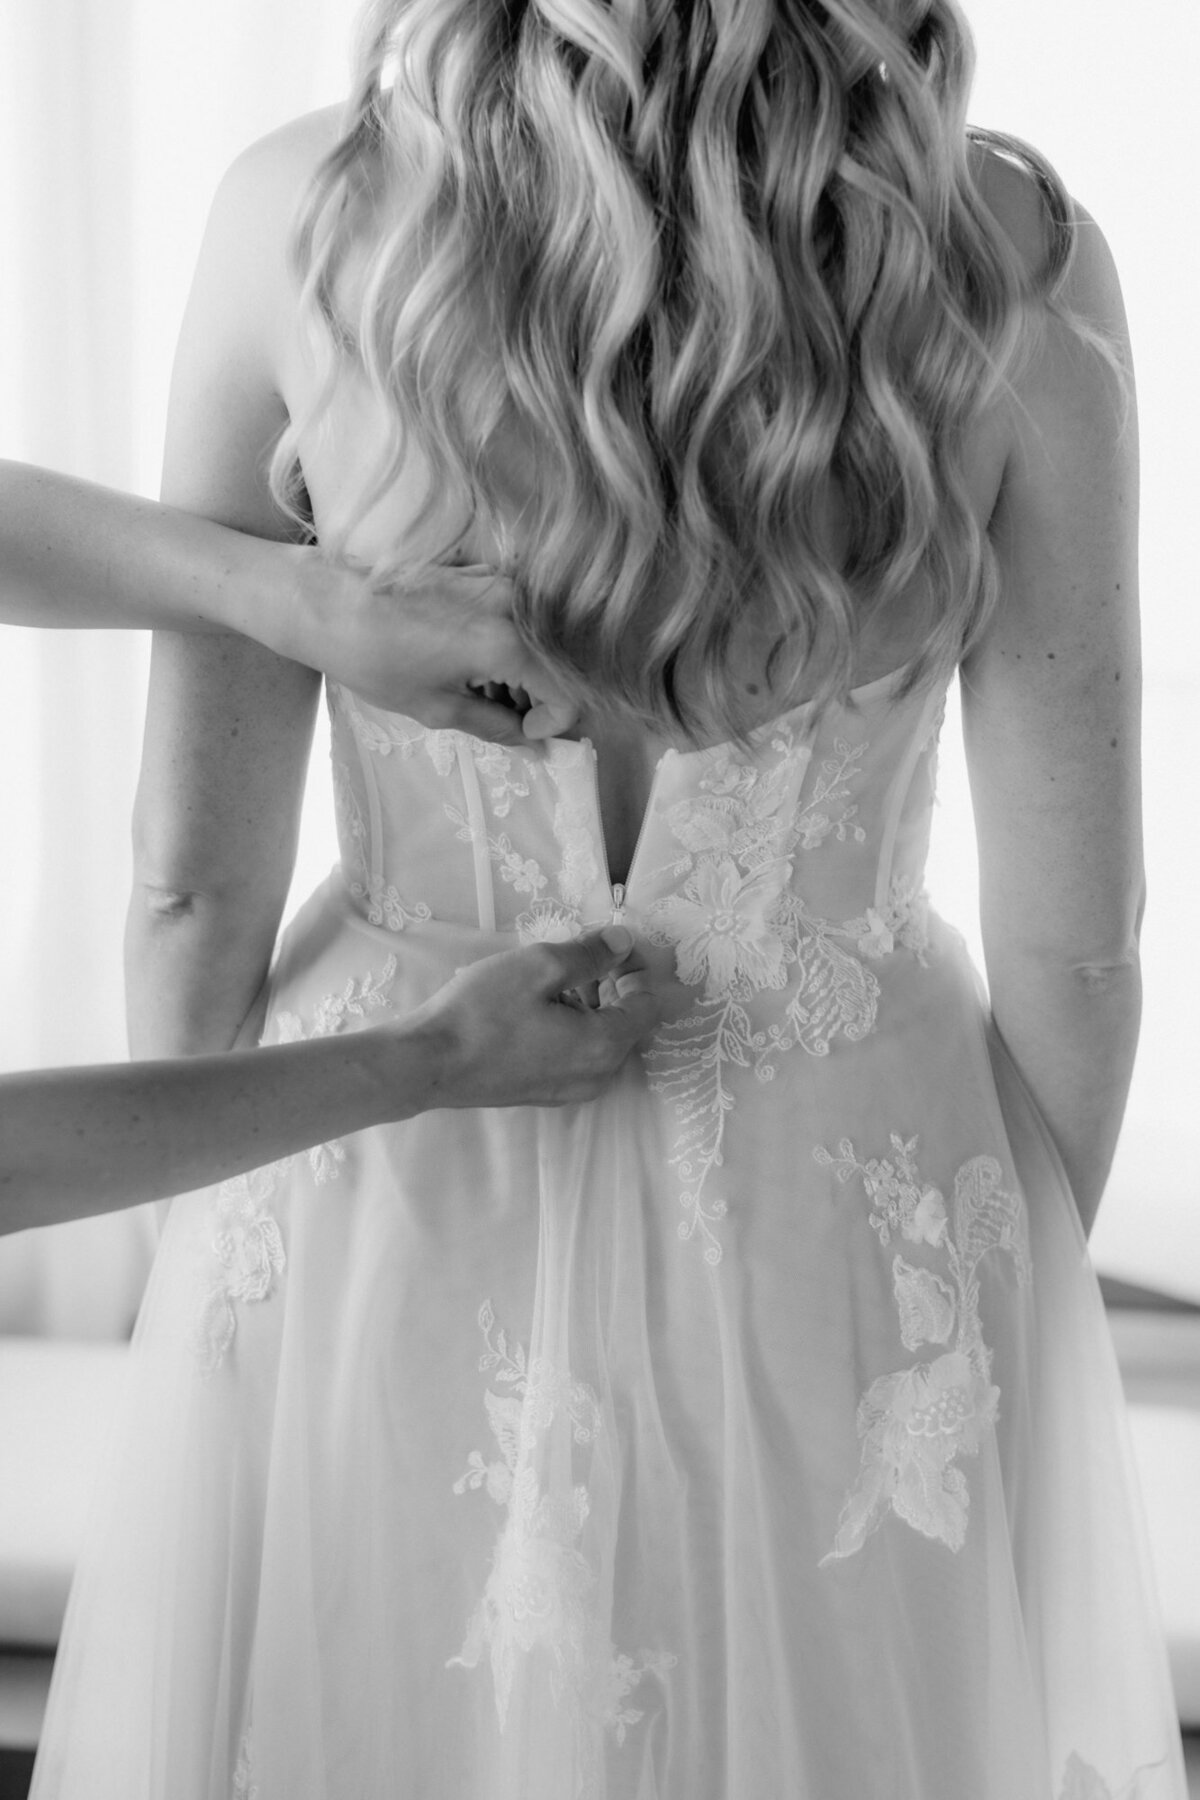 Der letzte Teil des Reisverschlusses am Kleid der Braut wird hier von zwei Händen geschlossen.